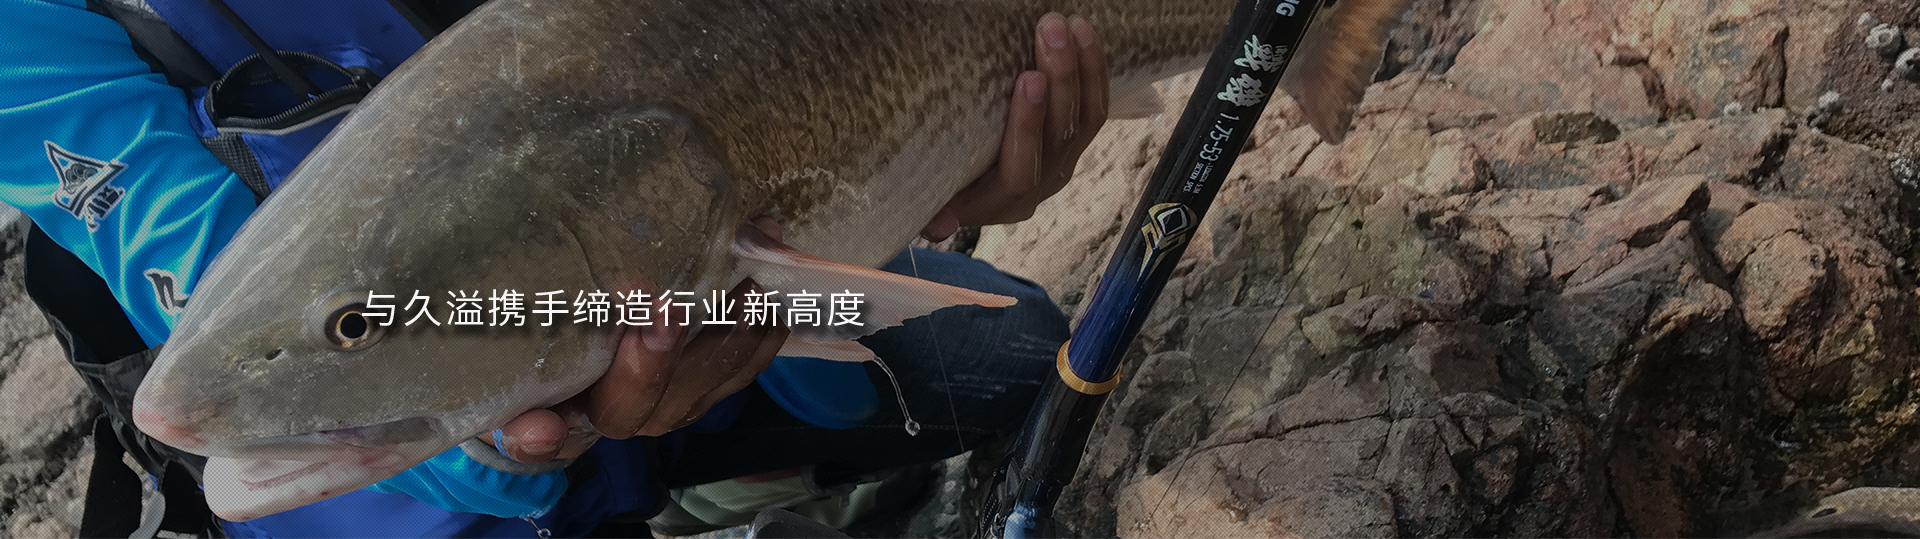 福州久溢渔具有限公司